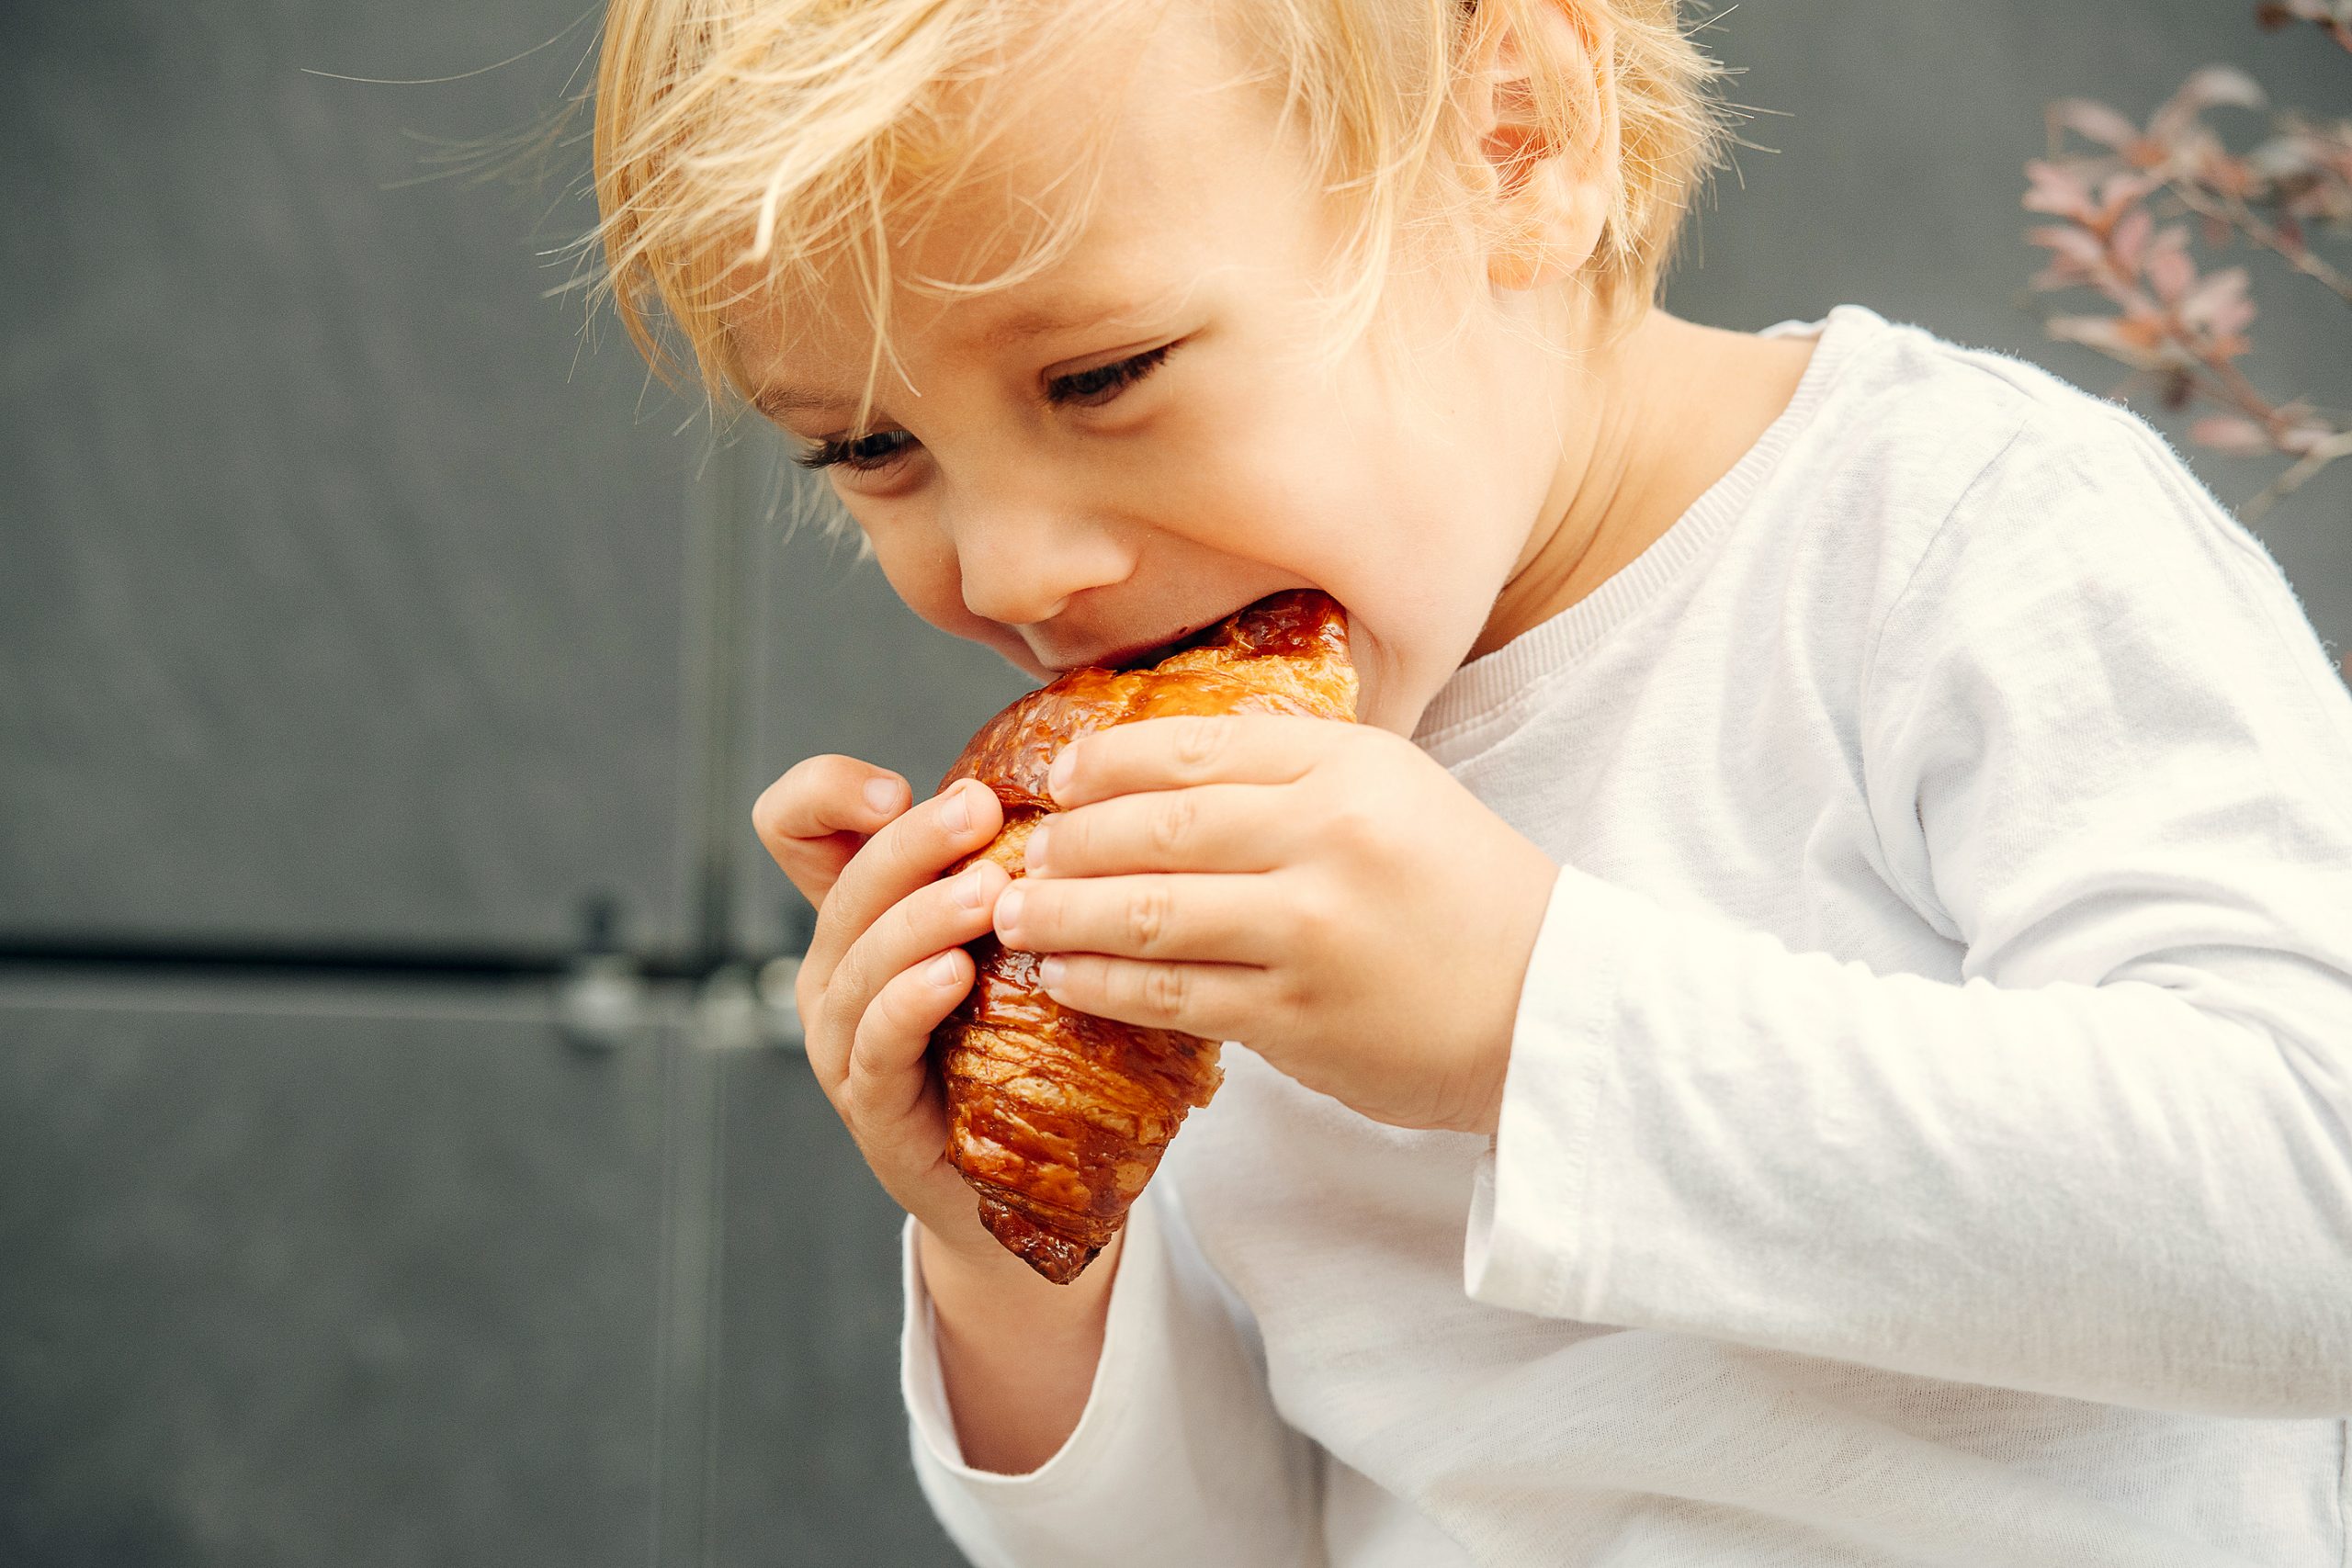 Qué hacer cuando un niño come demasiado